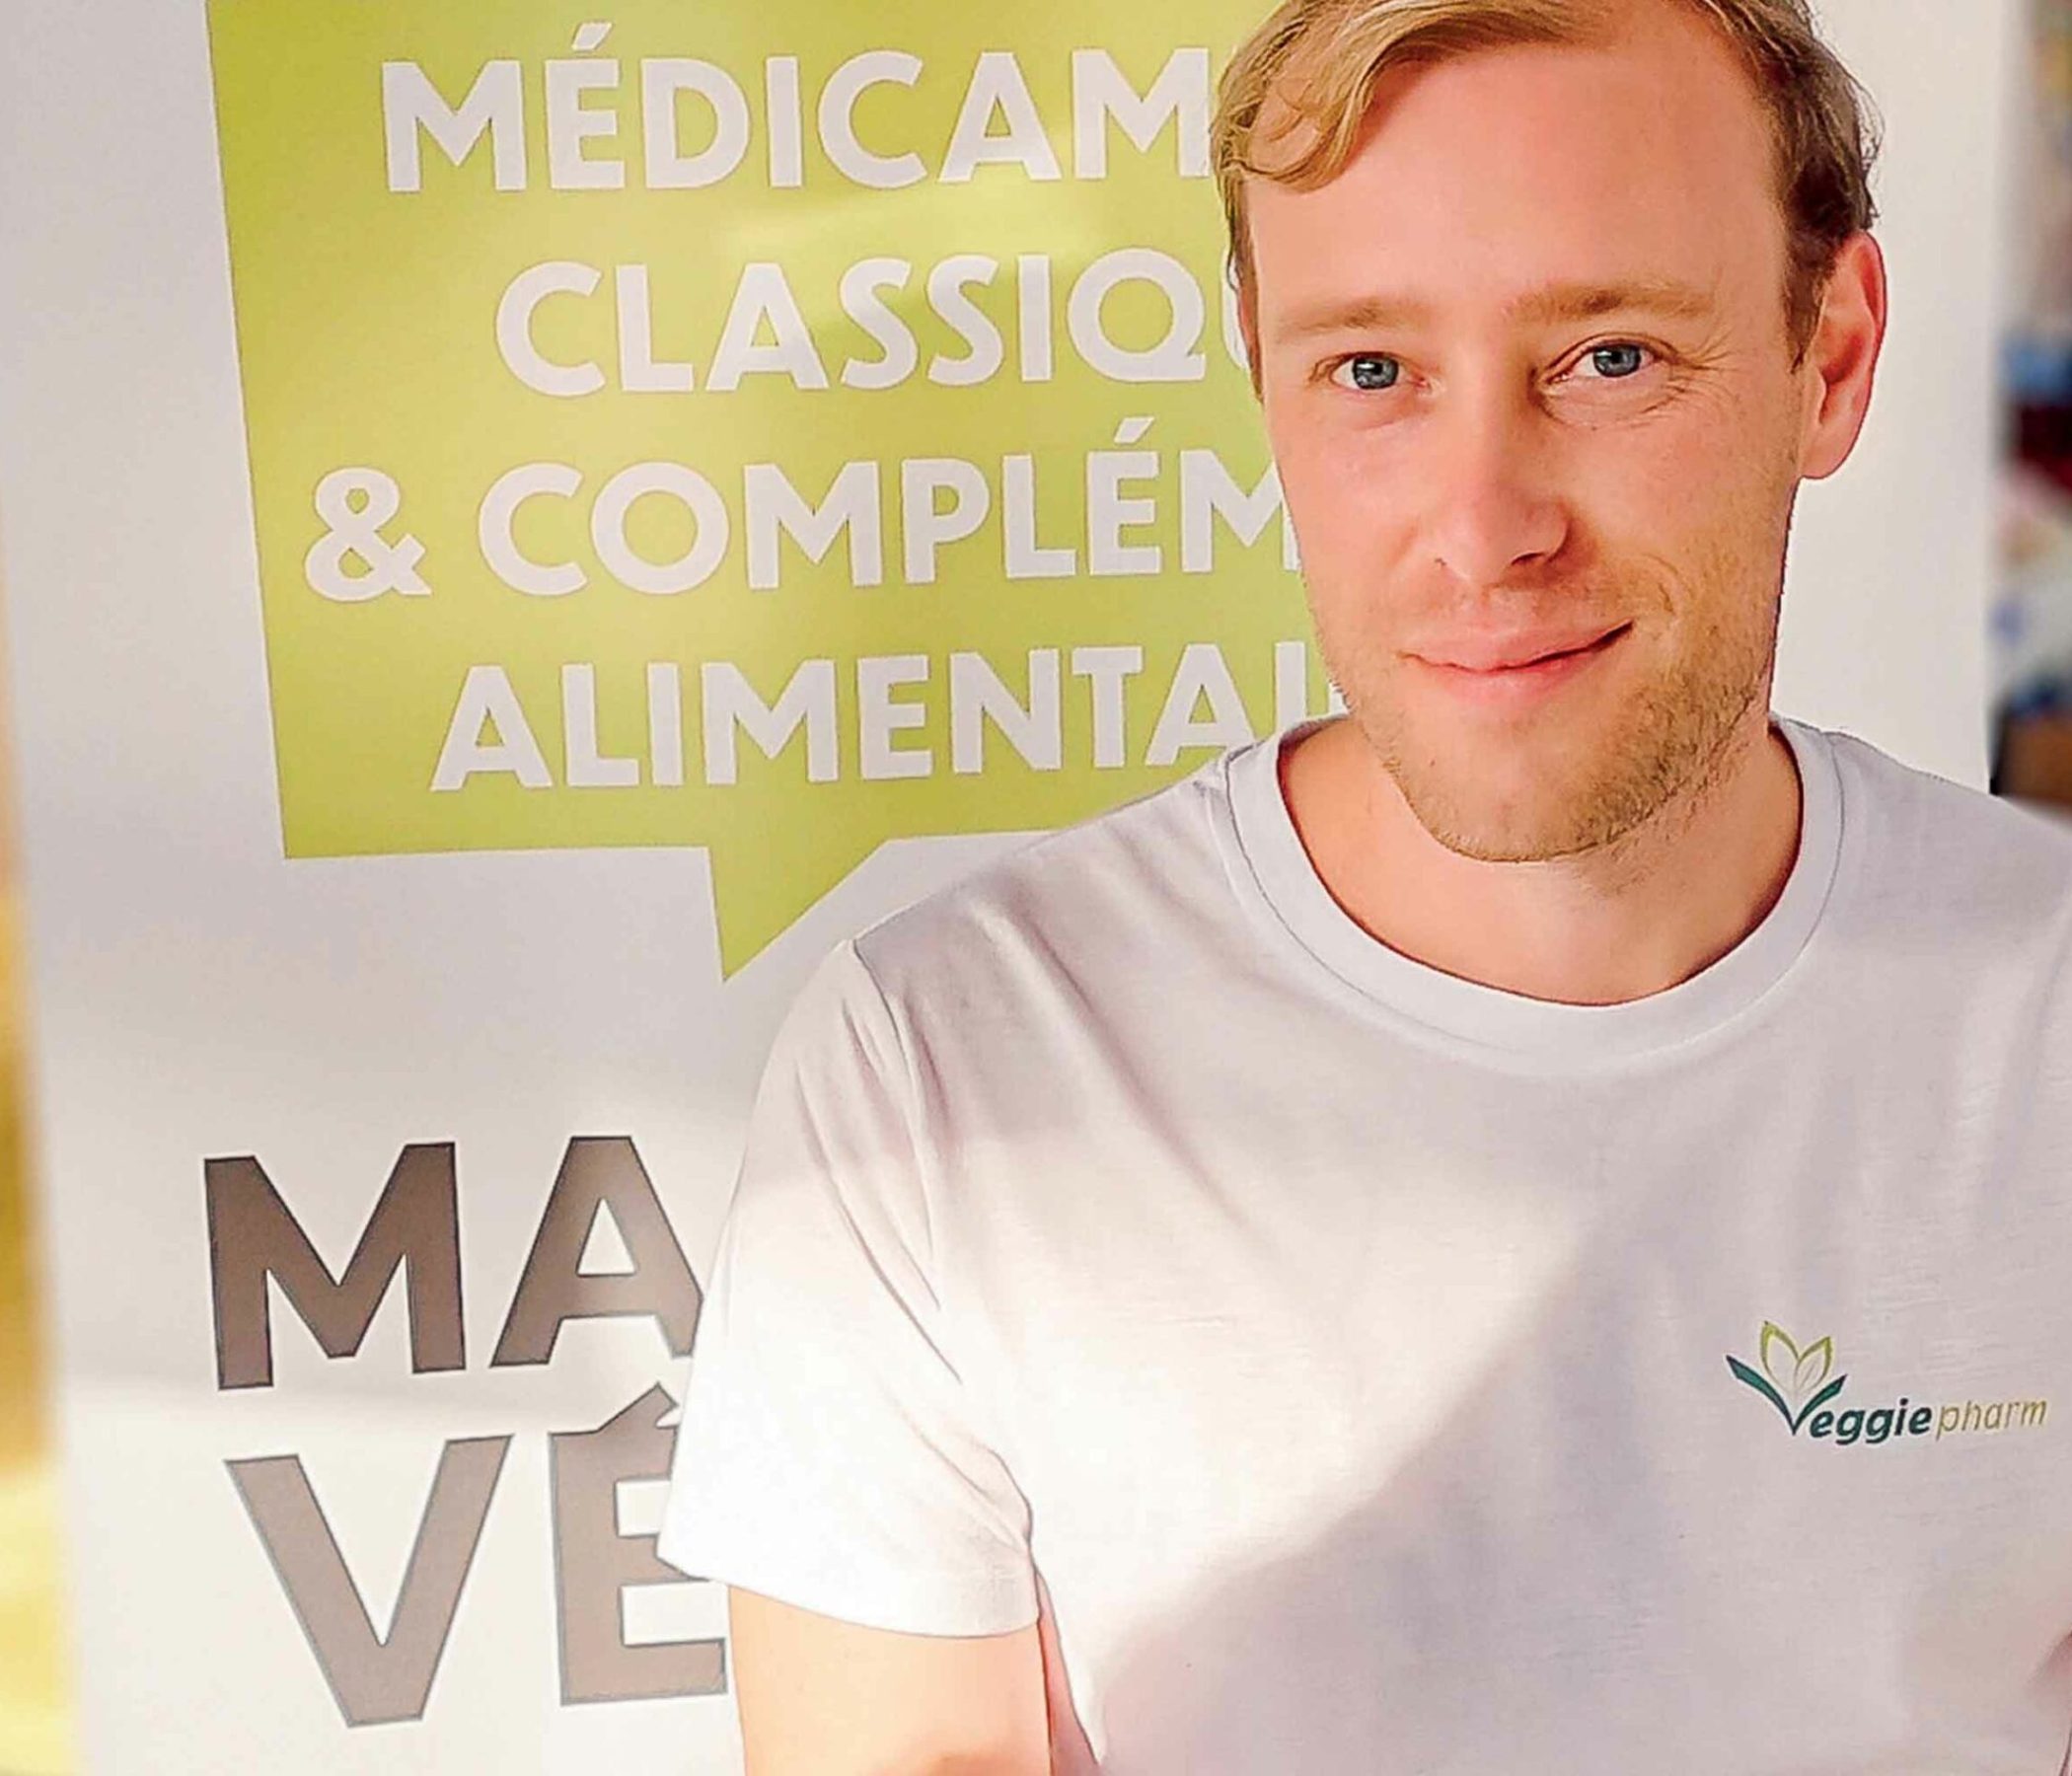 Kévin Bondiguel, co-fondateur de Veggiepharm (c) VeggiePharm